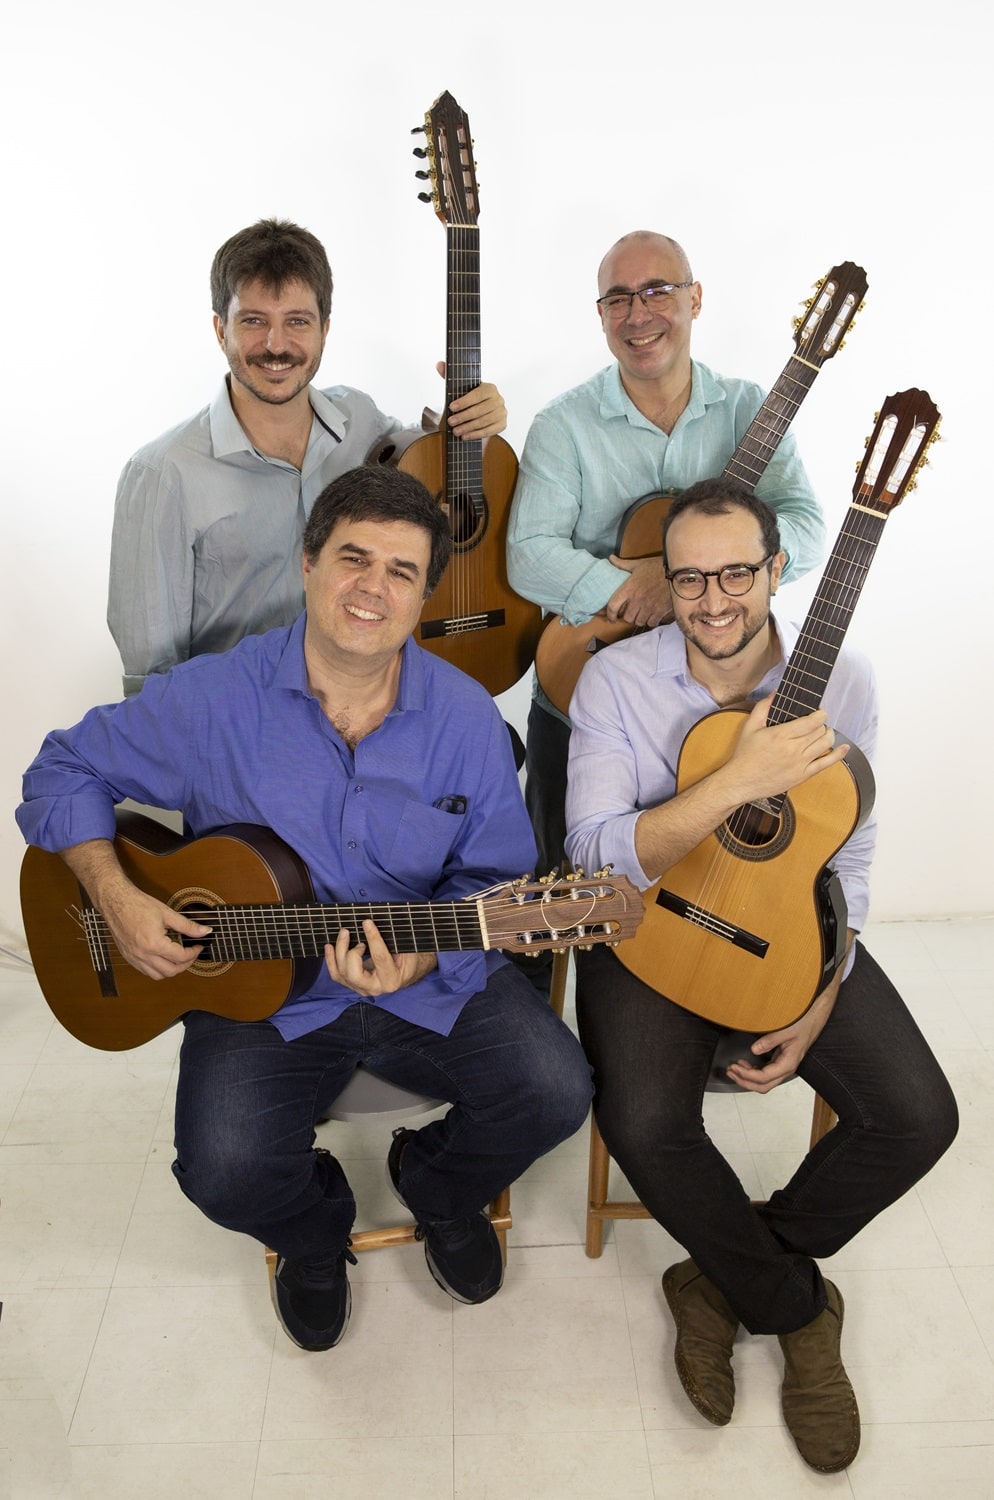 revistaprosaversoearte.com - Quarteto Maogani celebra 30 anos de arte com primeiro álbum inteiramente autoral